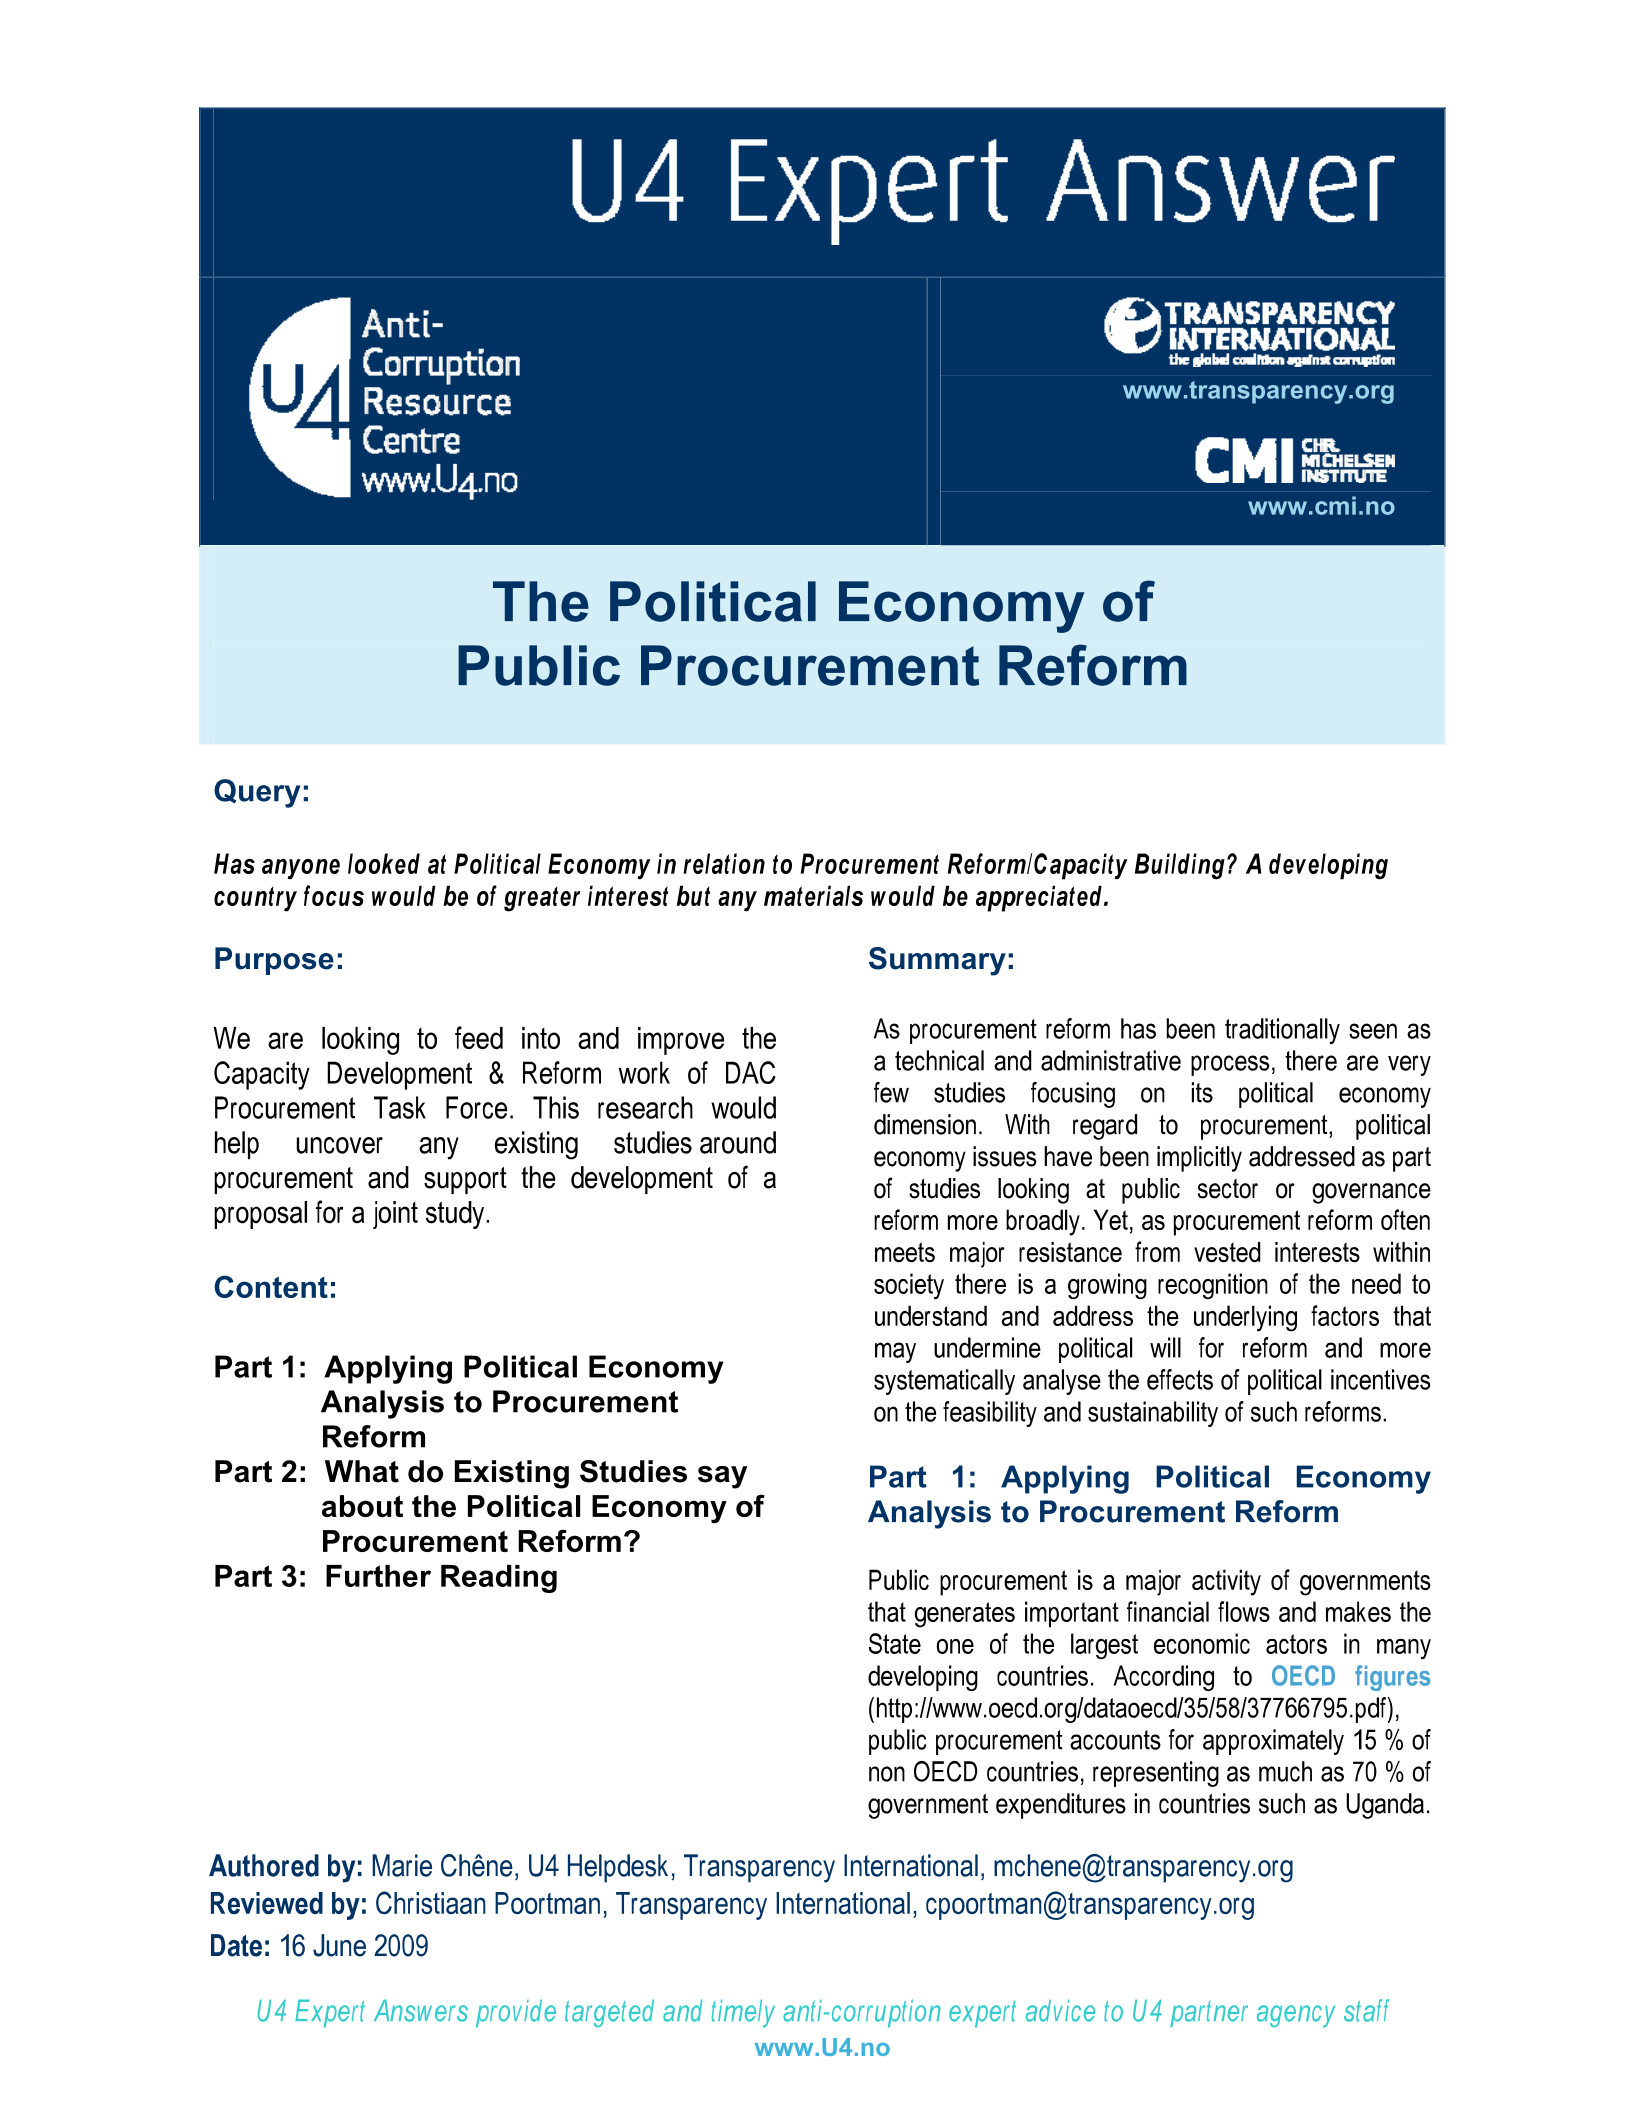 The political economy of public procurement reform